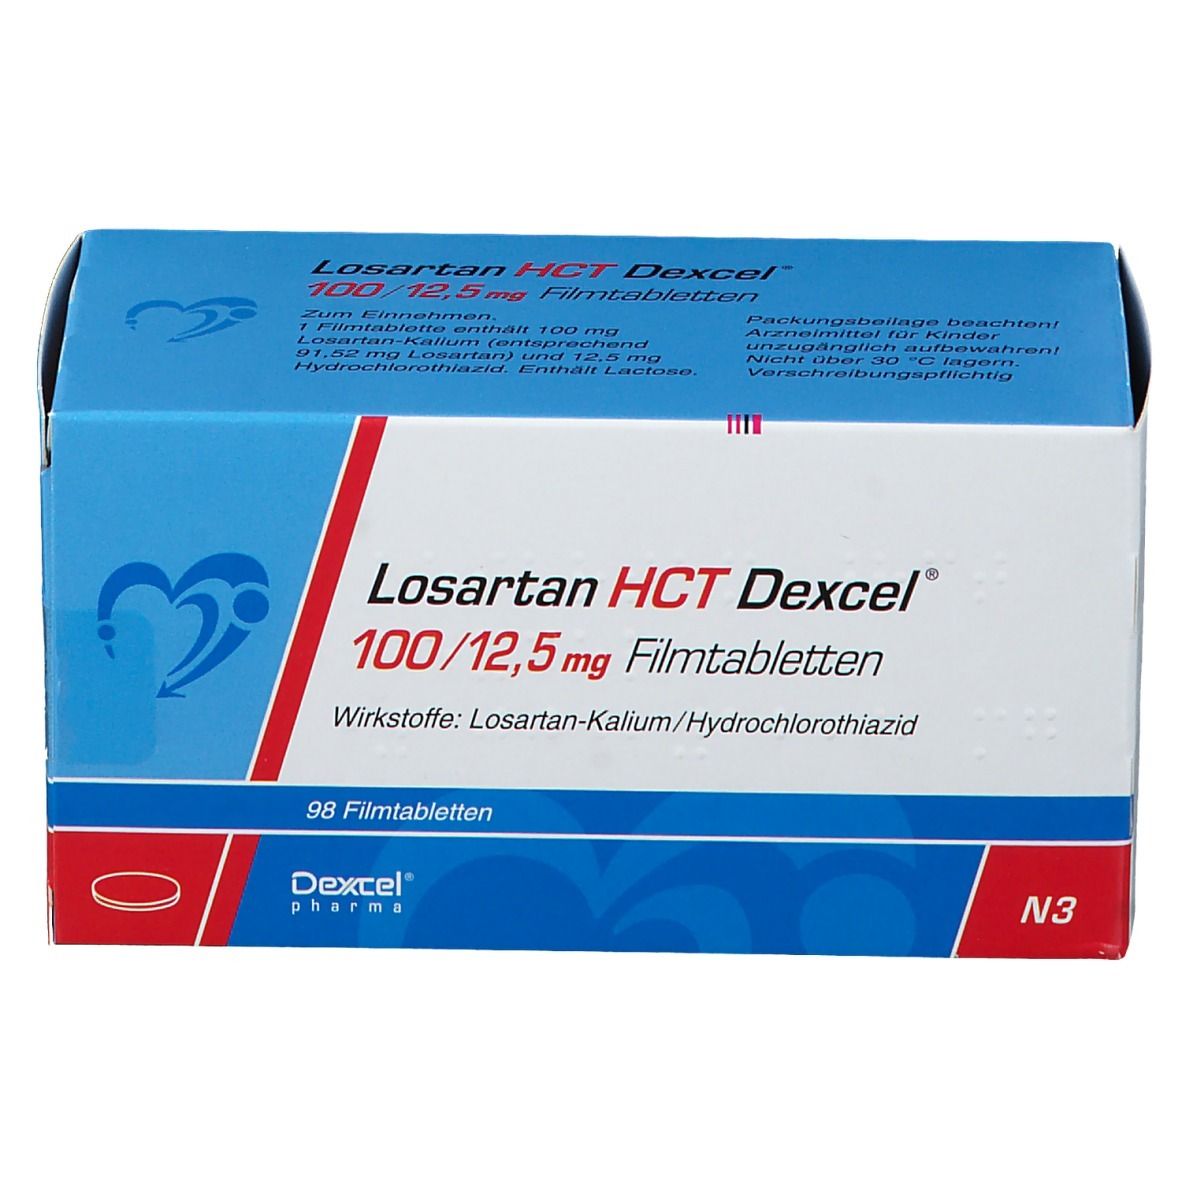 Losartan HCT Dexcel® 100/12,5 mg